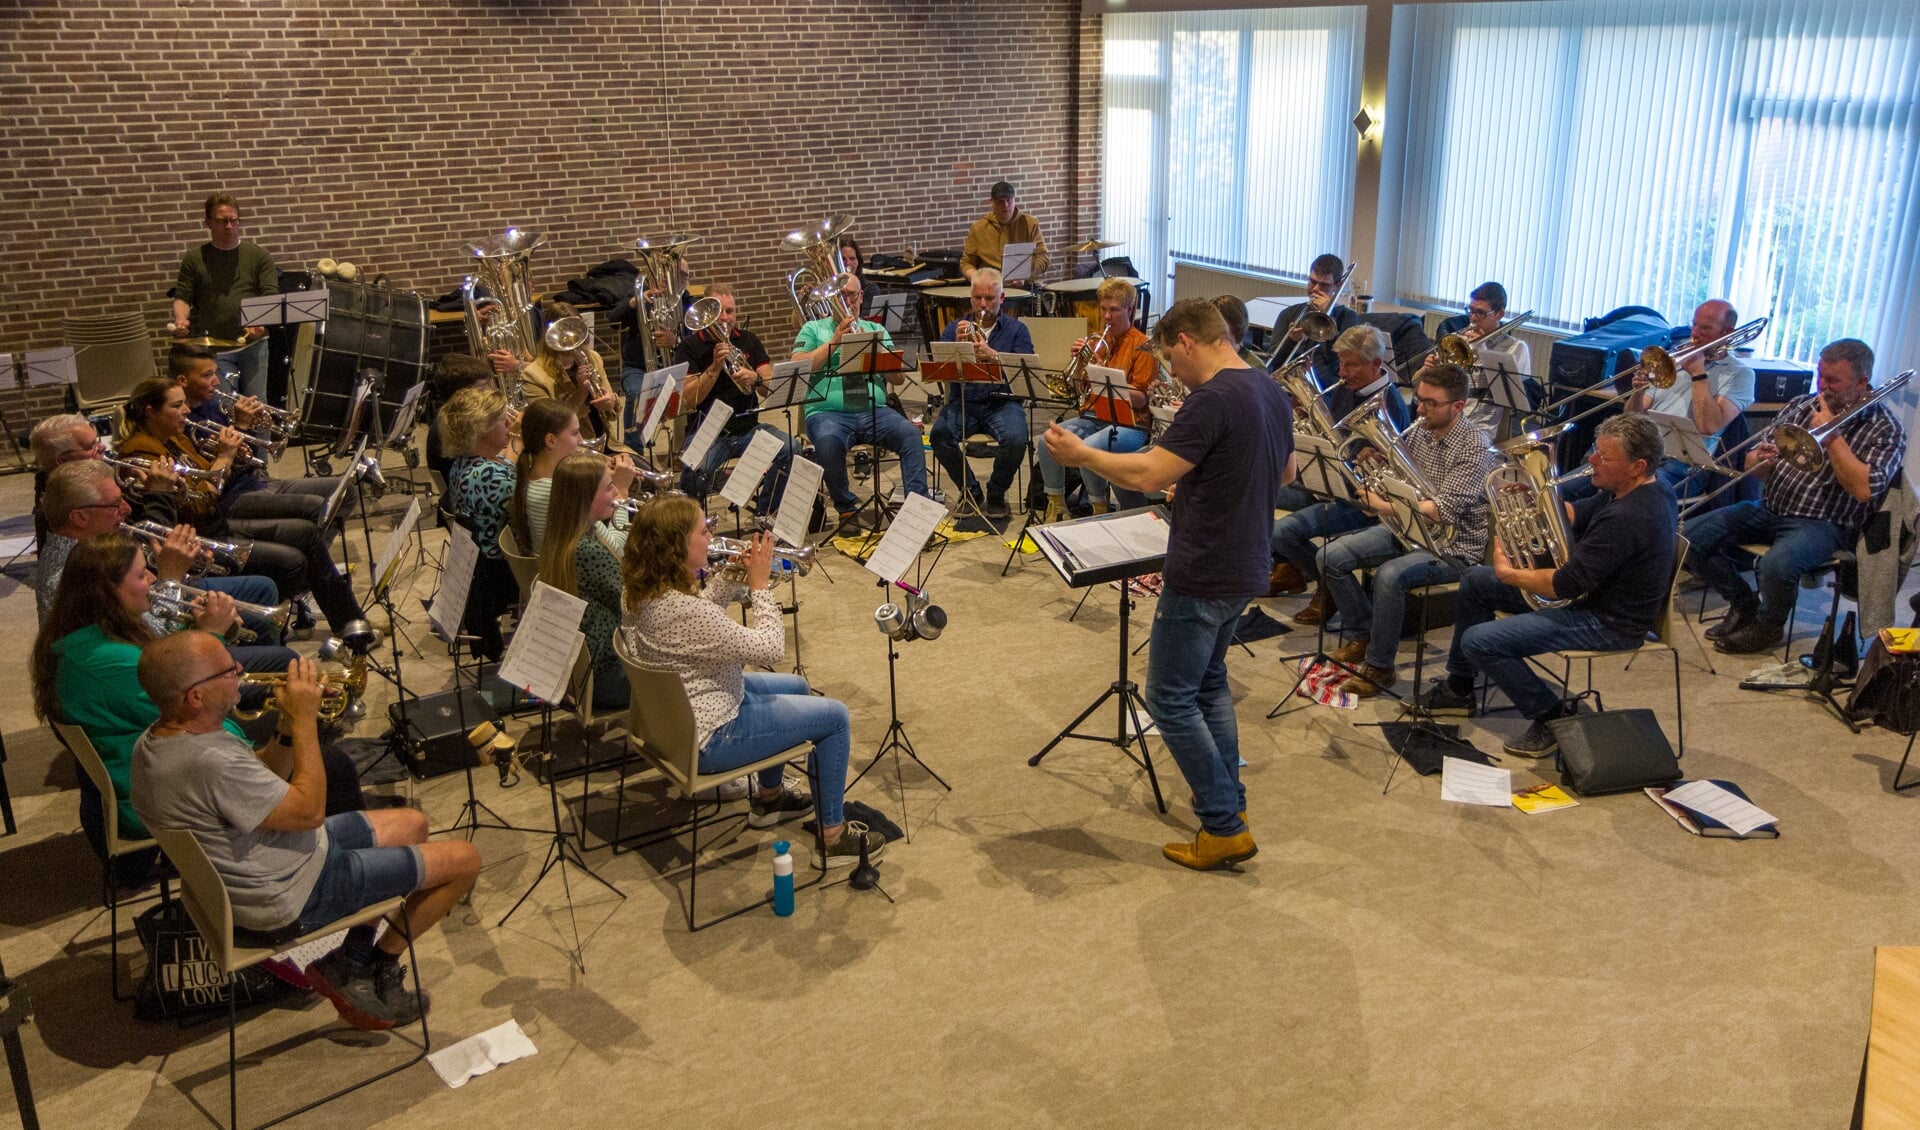 De brassbands Wilhelmina uit Kollum en de Bazuin uit Triemen/Westergeest repeteren samen voor de voorstelling. 